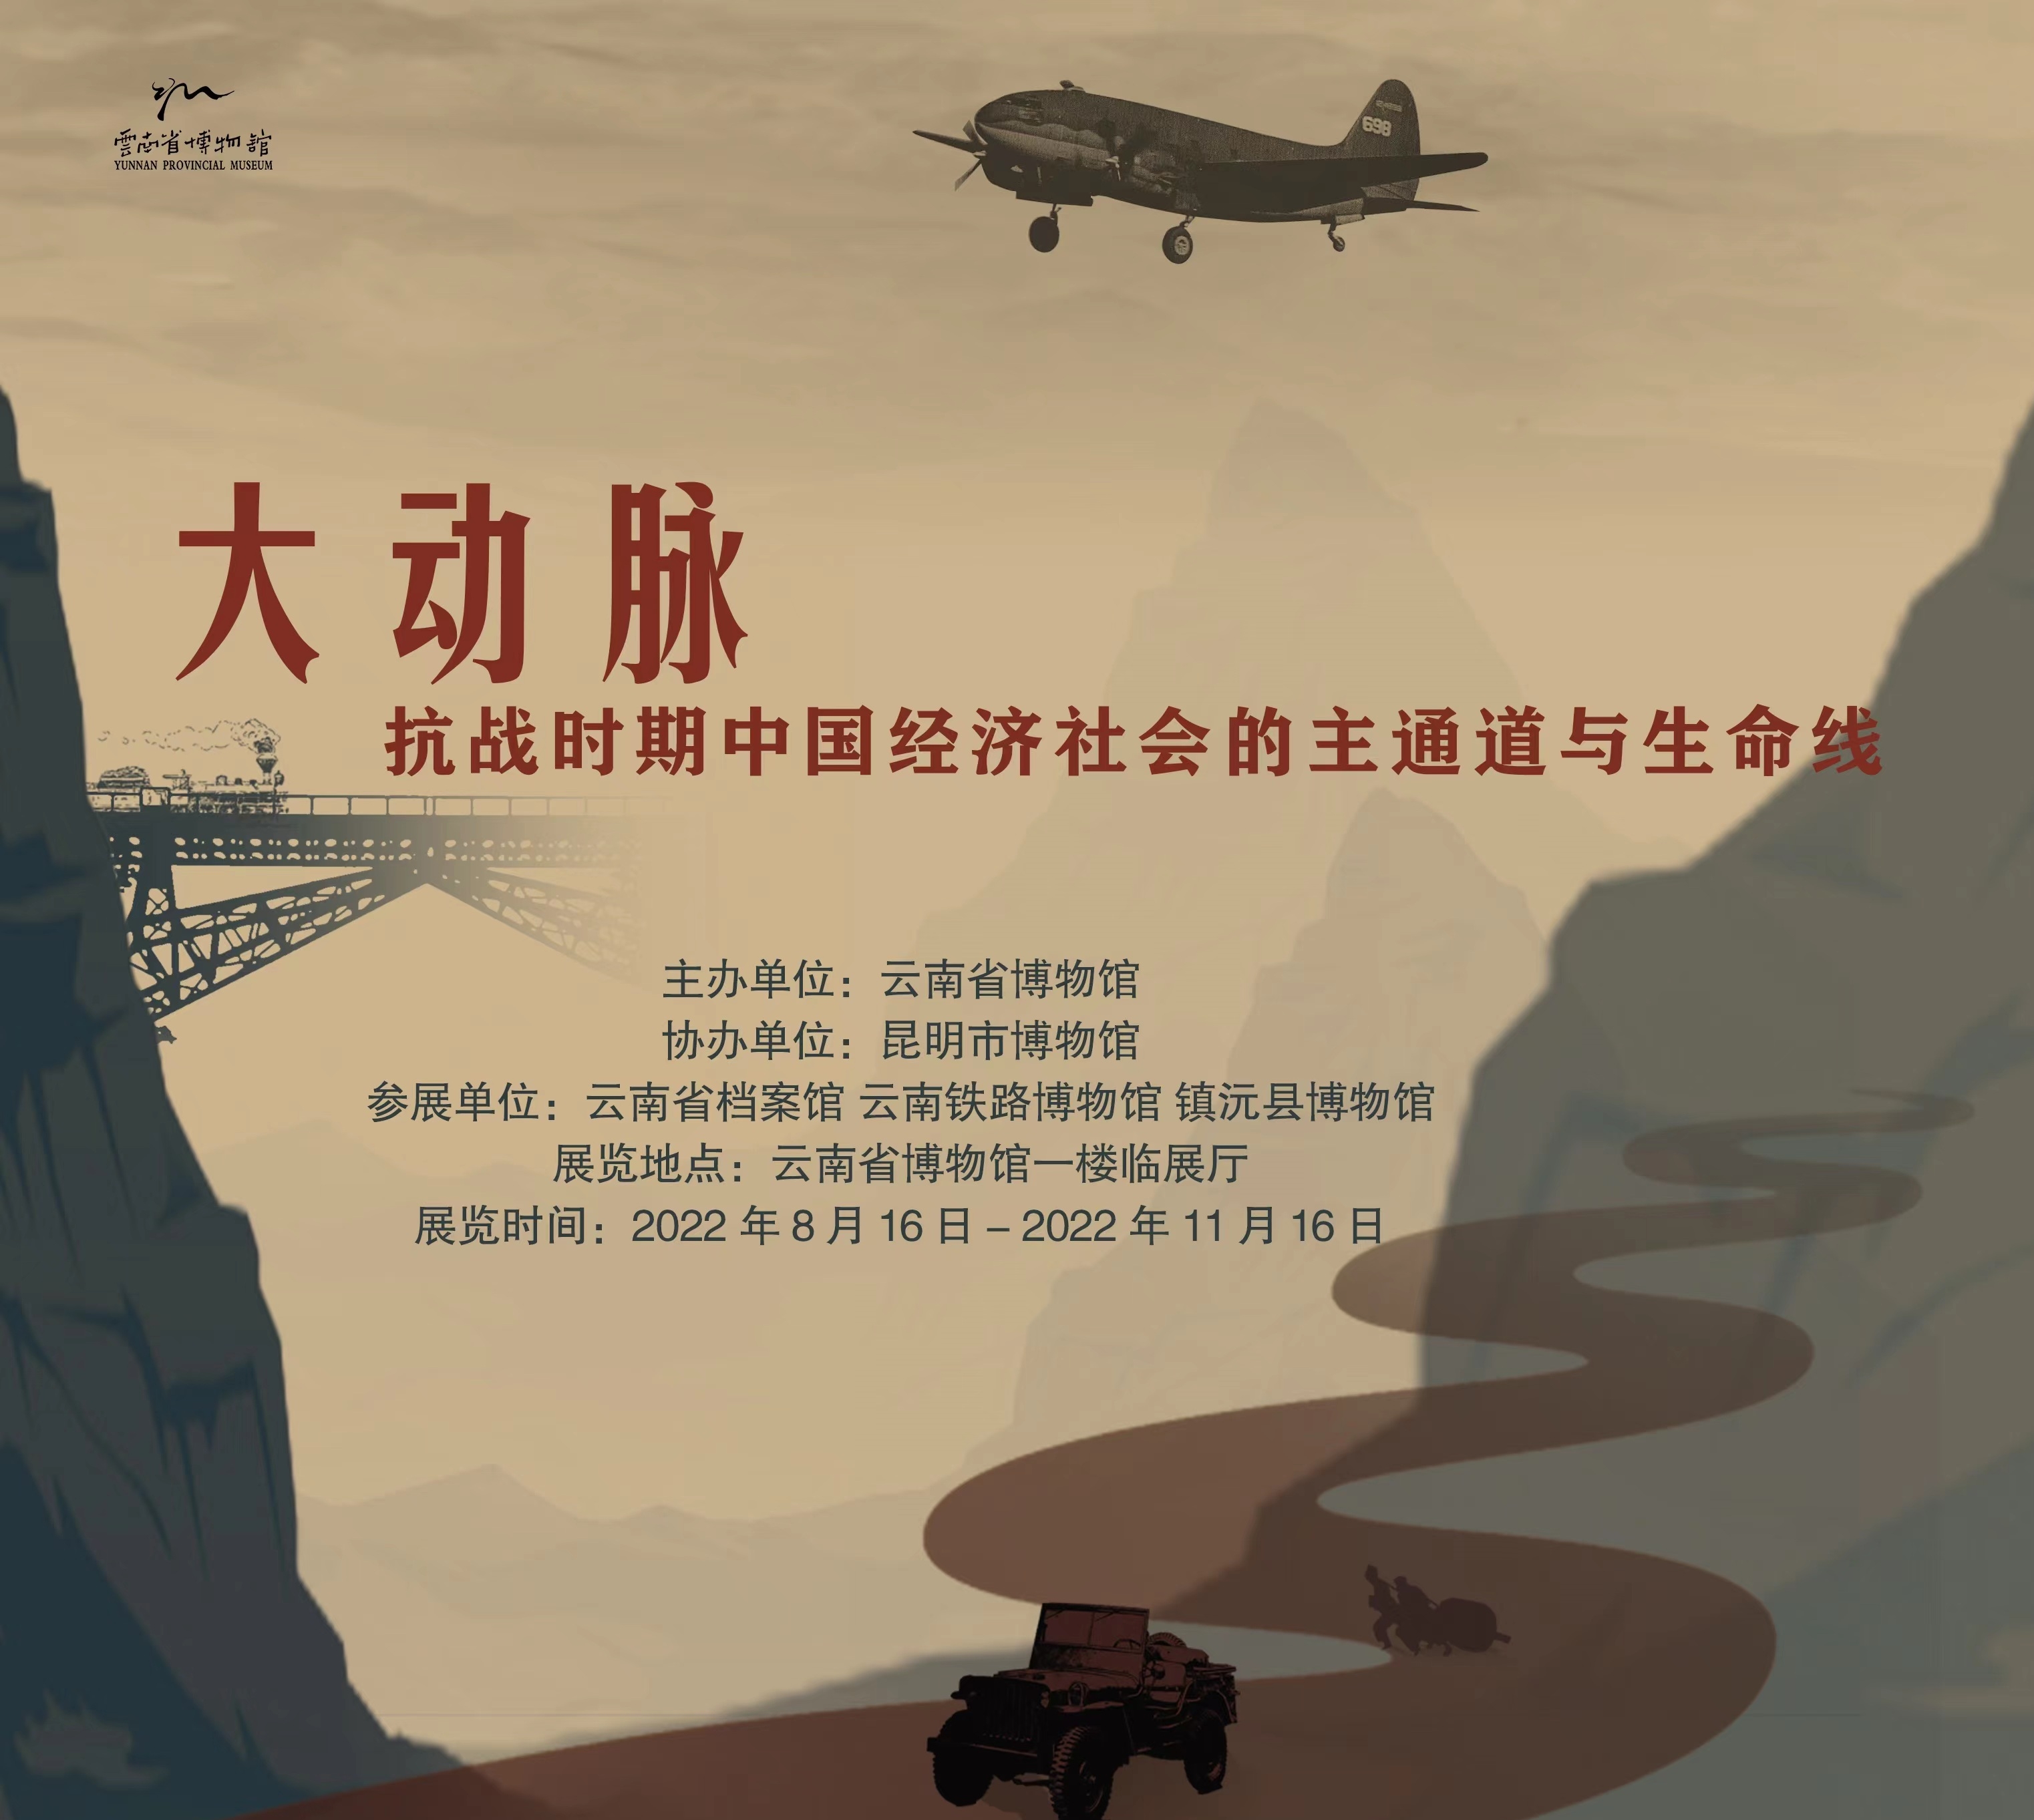 『展览回顾』大动脉——抗战时期中国经济社会主通道与生命线